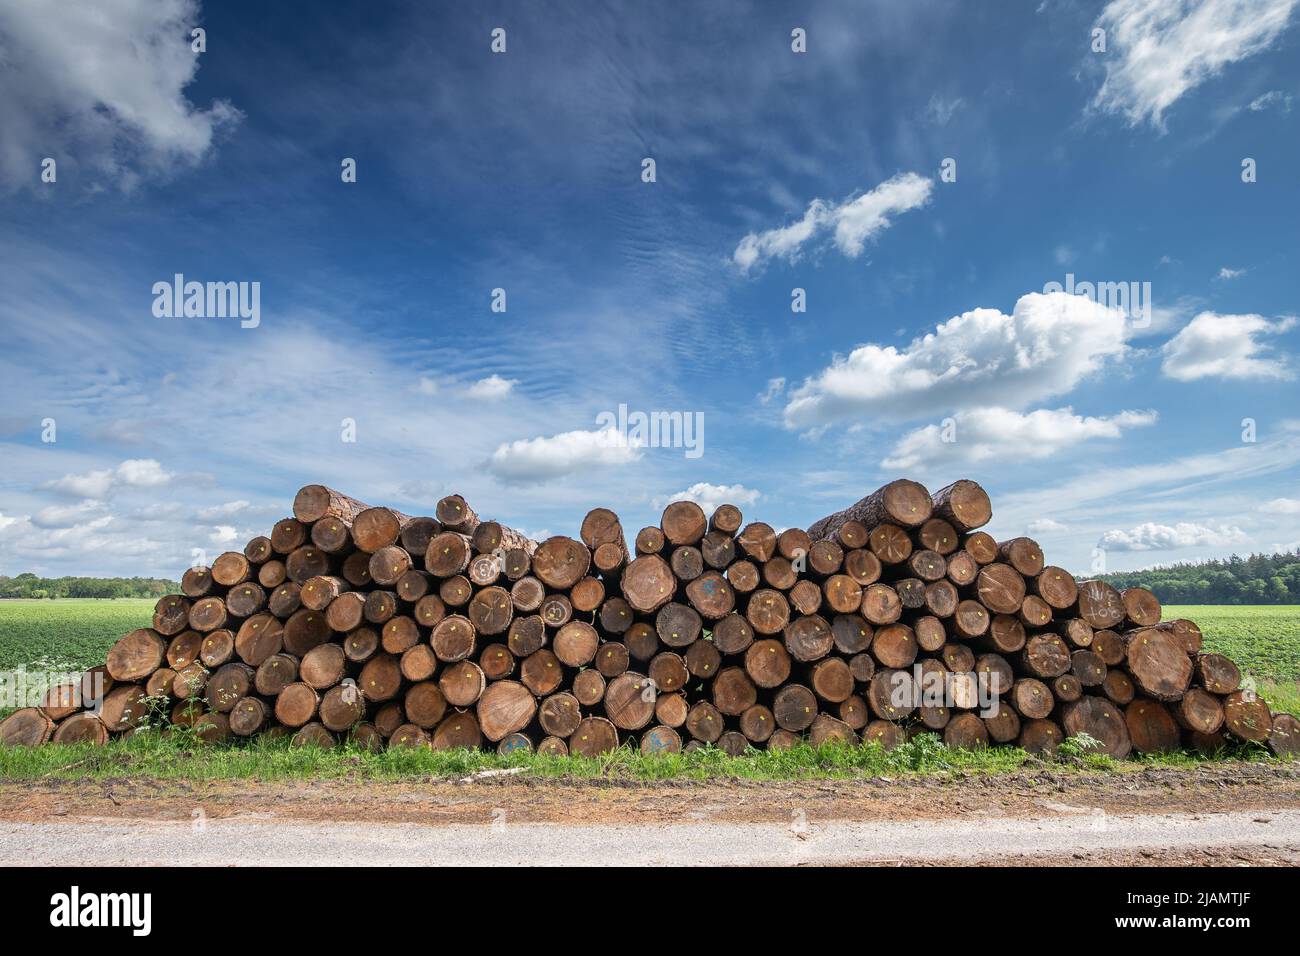 Troncs d'arbres empilés issus de forêts hollandaises gérées de manière durable avec section transversale du tronc, avec anneaux de croissance et étiquettes clairement visibles pour FSC certi Banque D'Images